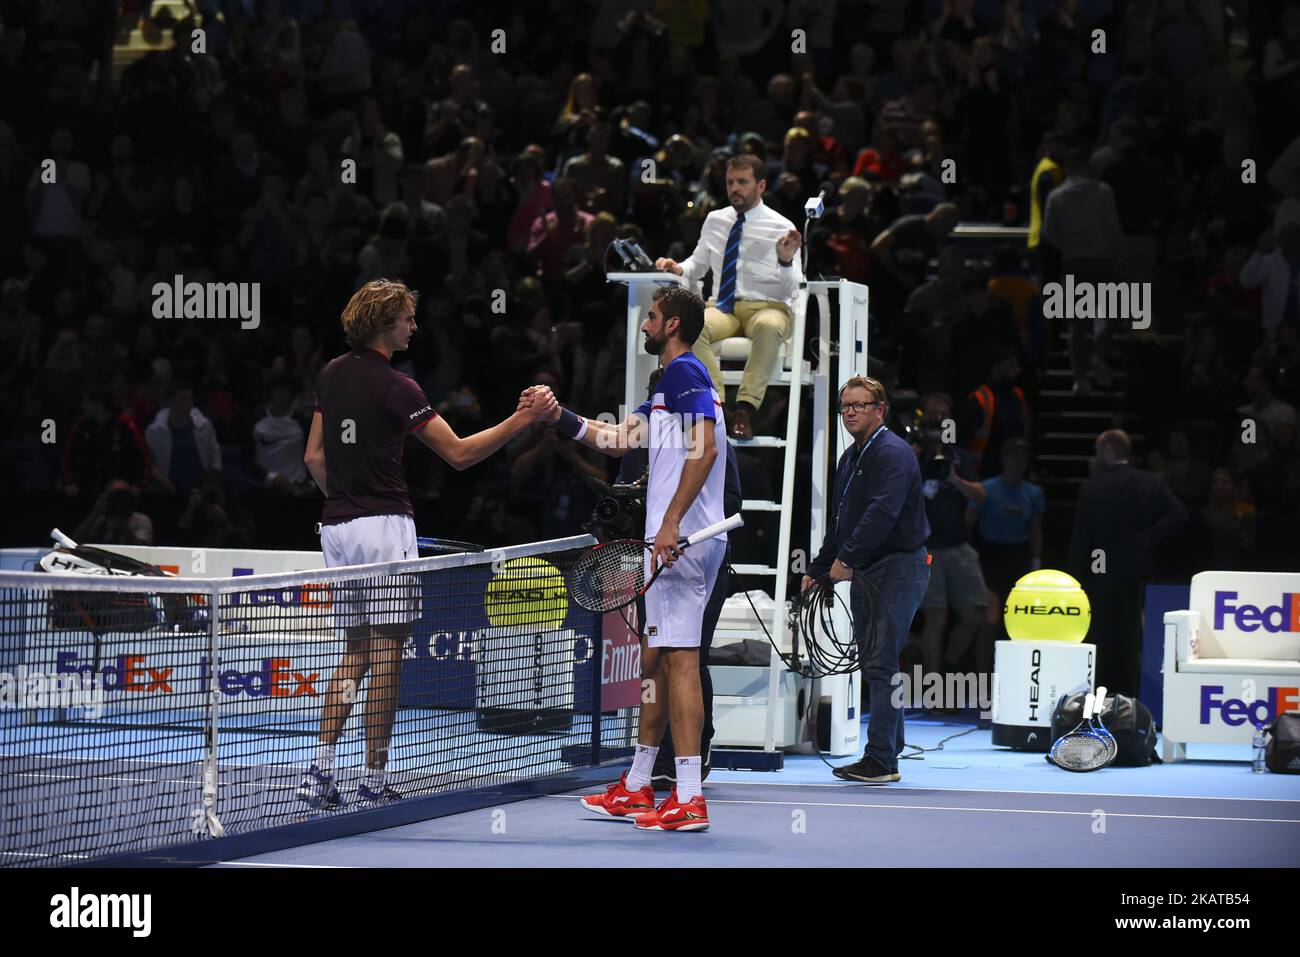 Alexander Zverev aus Deutschland und Marin Cilic aus Kroatien nach dem Nitto ATP World Tour Finale in der O2 Arena, London, Großbritannien am 12. November 2017. (Foto von Alberto Pezzali/NurPhoto) Stockfoto